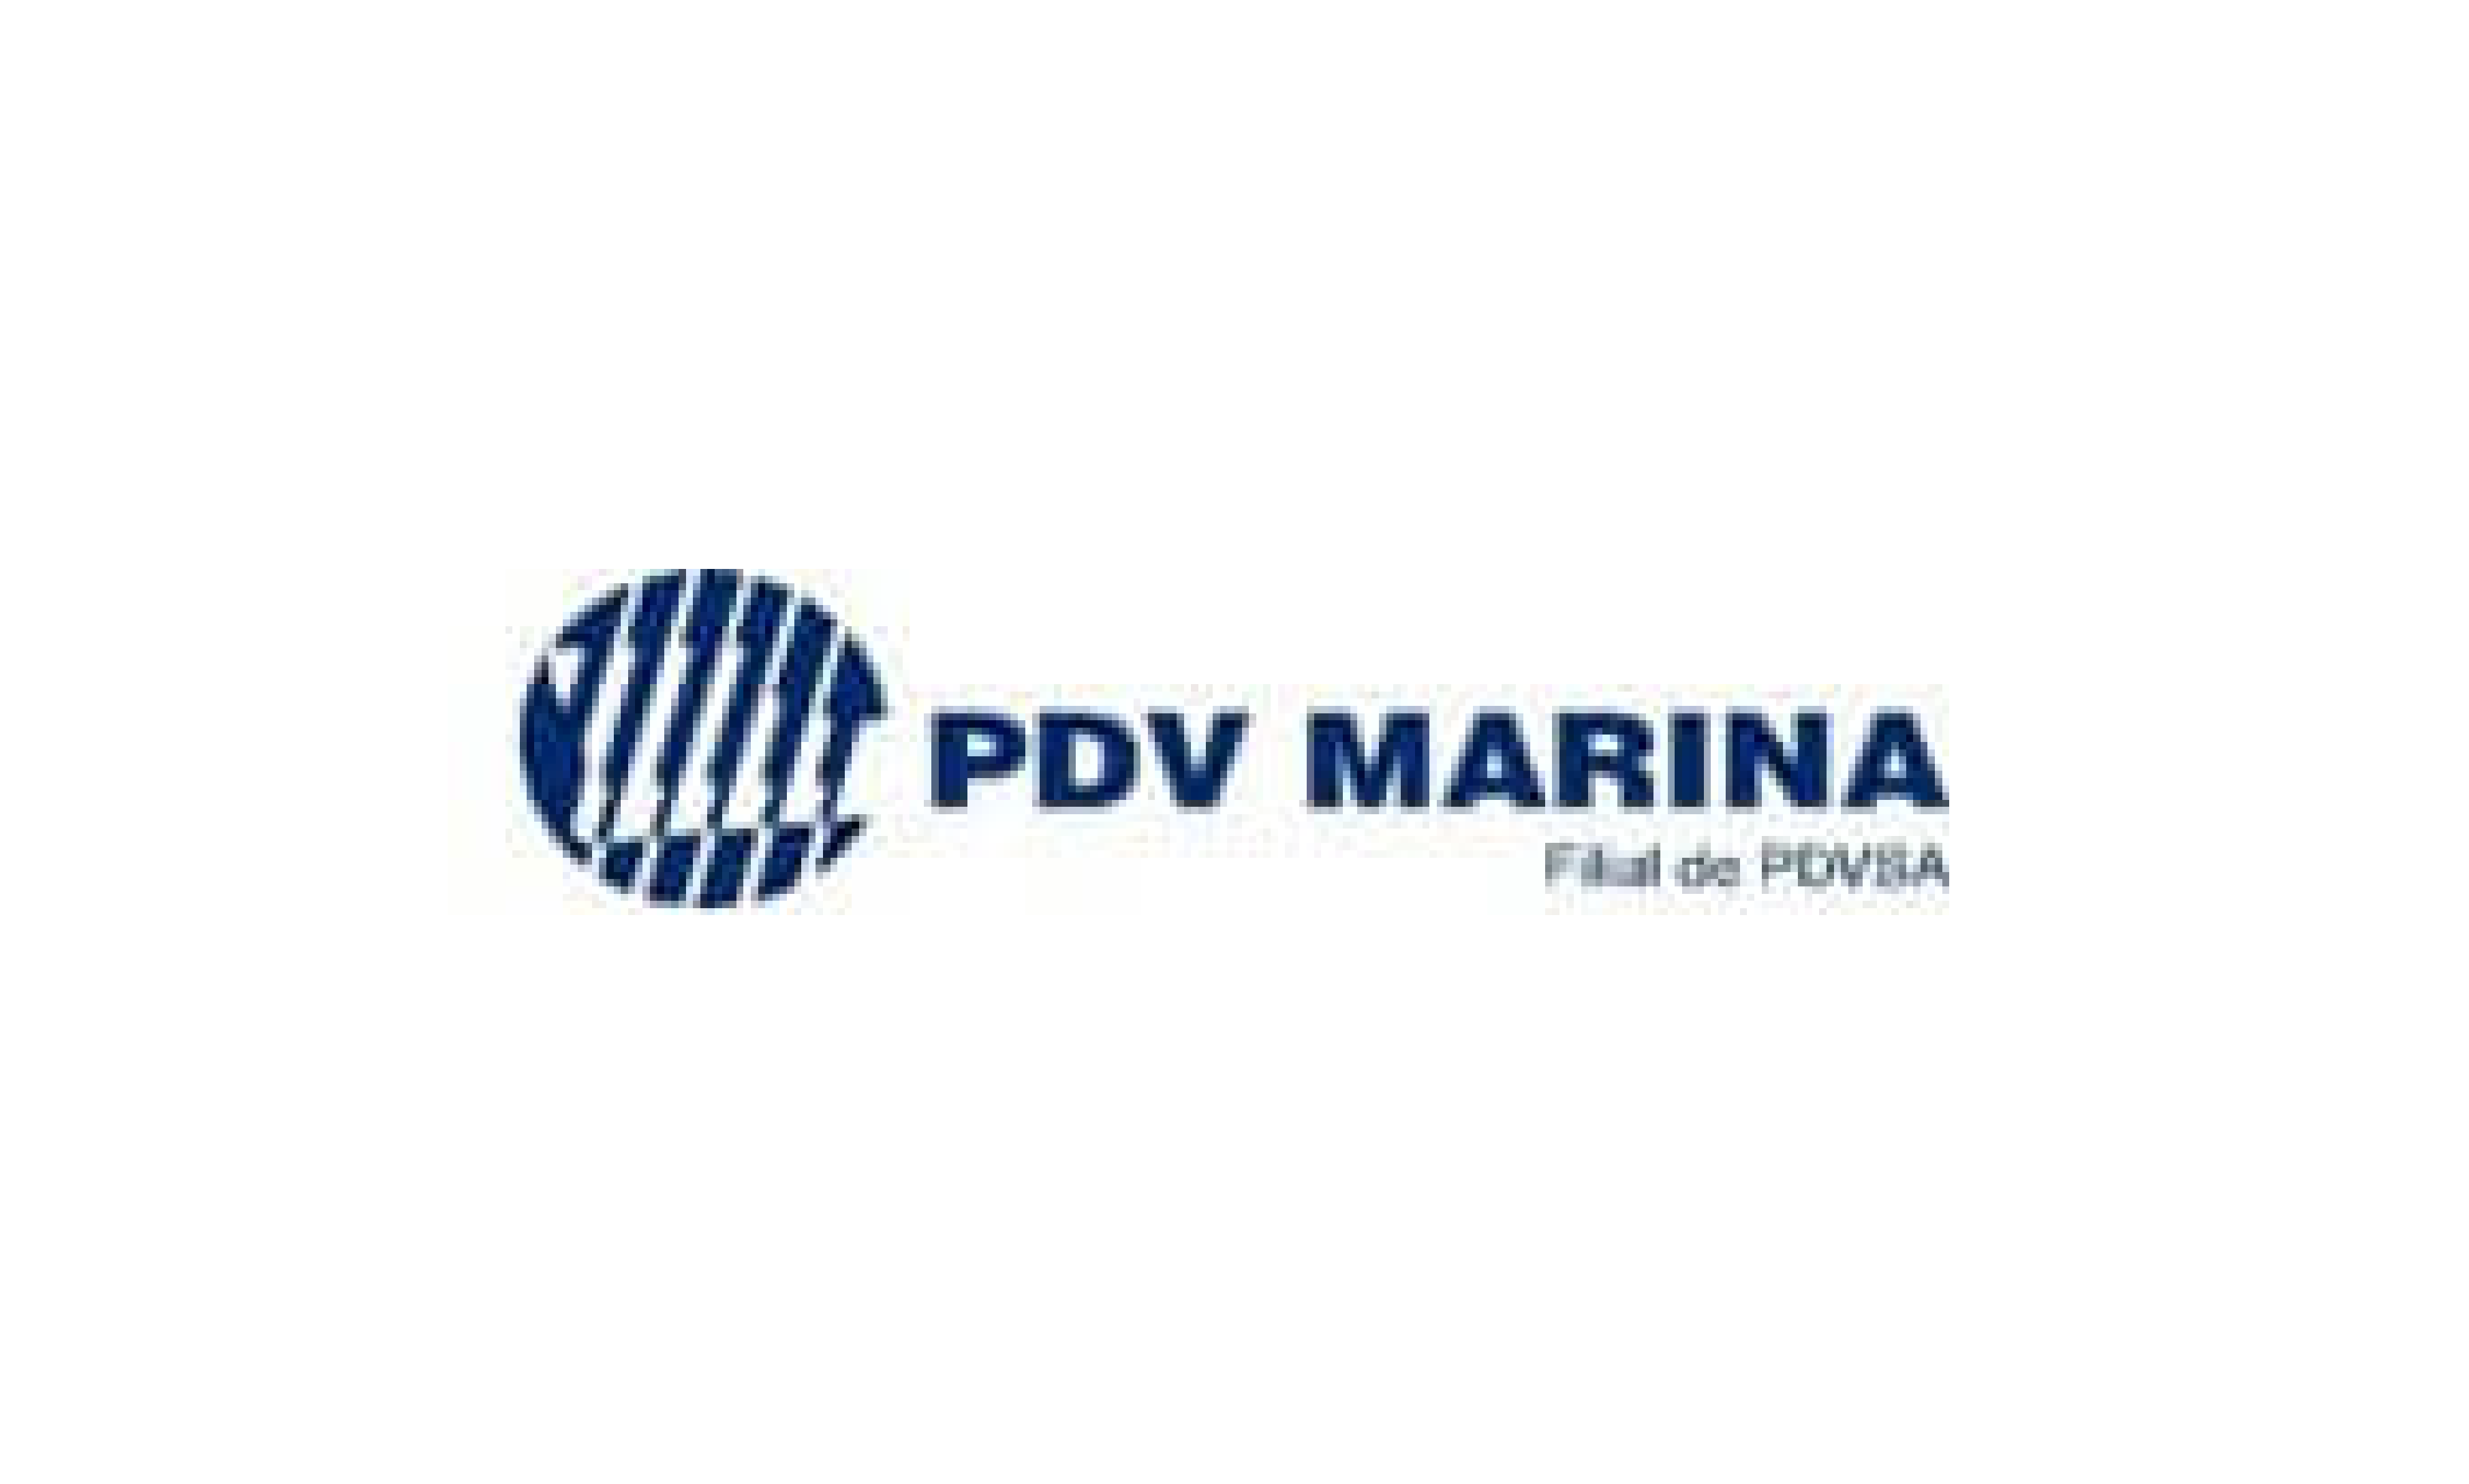 Cliente PDV Marina